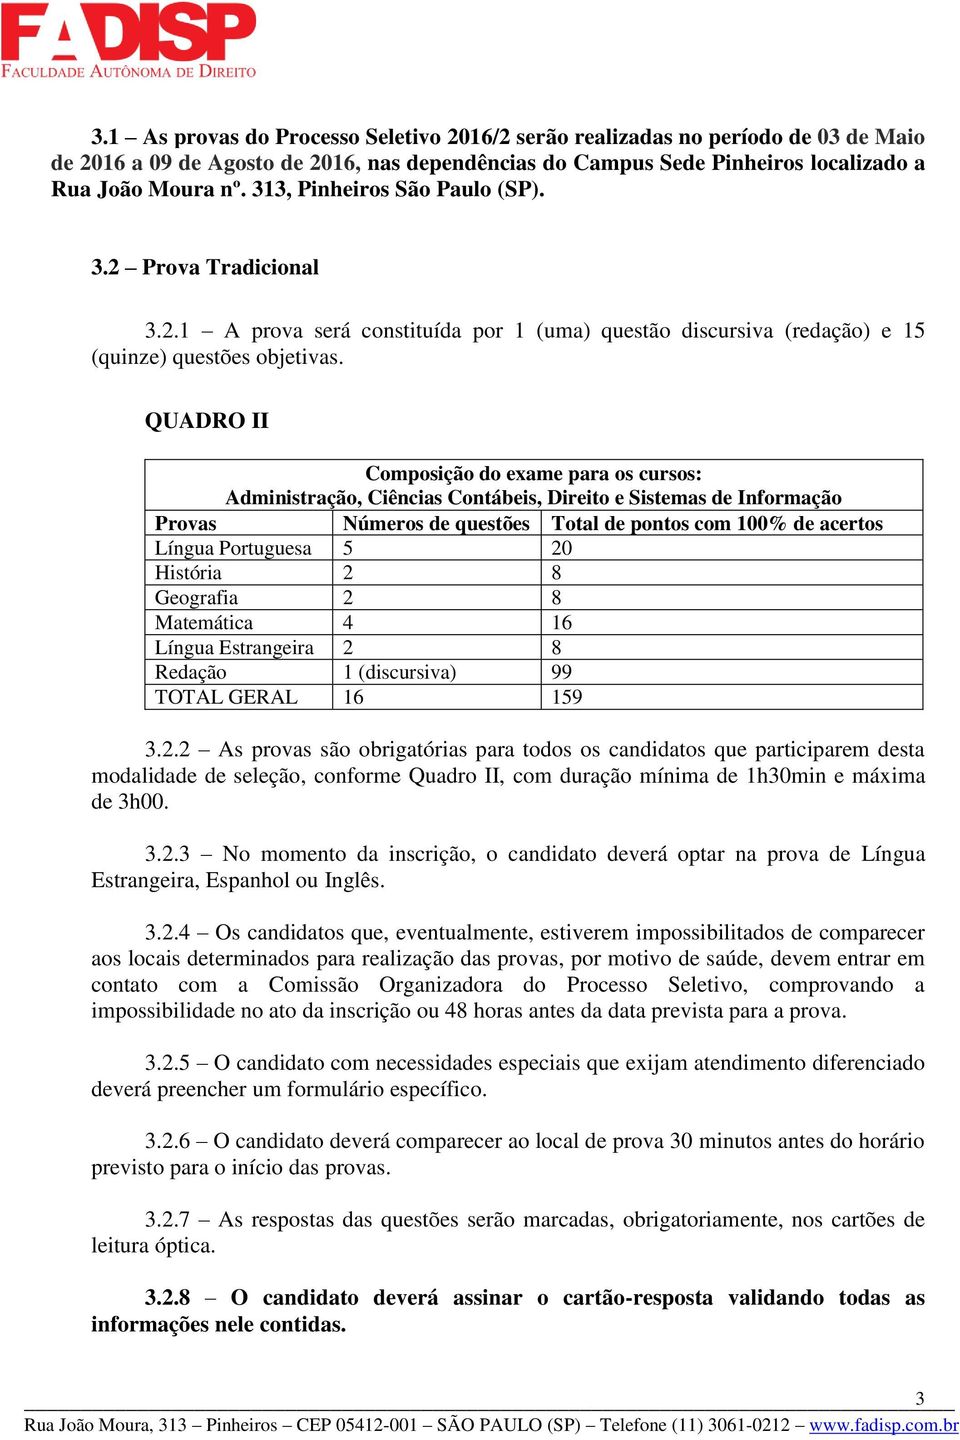 QUADRO II Composição do exame para os cursos: Administração, Ciências Contábeis, Direito e Sistemas de Informação Provas Números de questões Total de pontos com 100% de acertos Língua Portuguesa 5 20